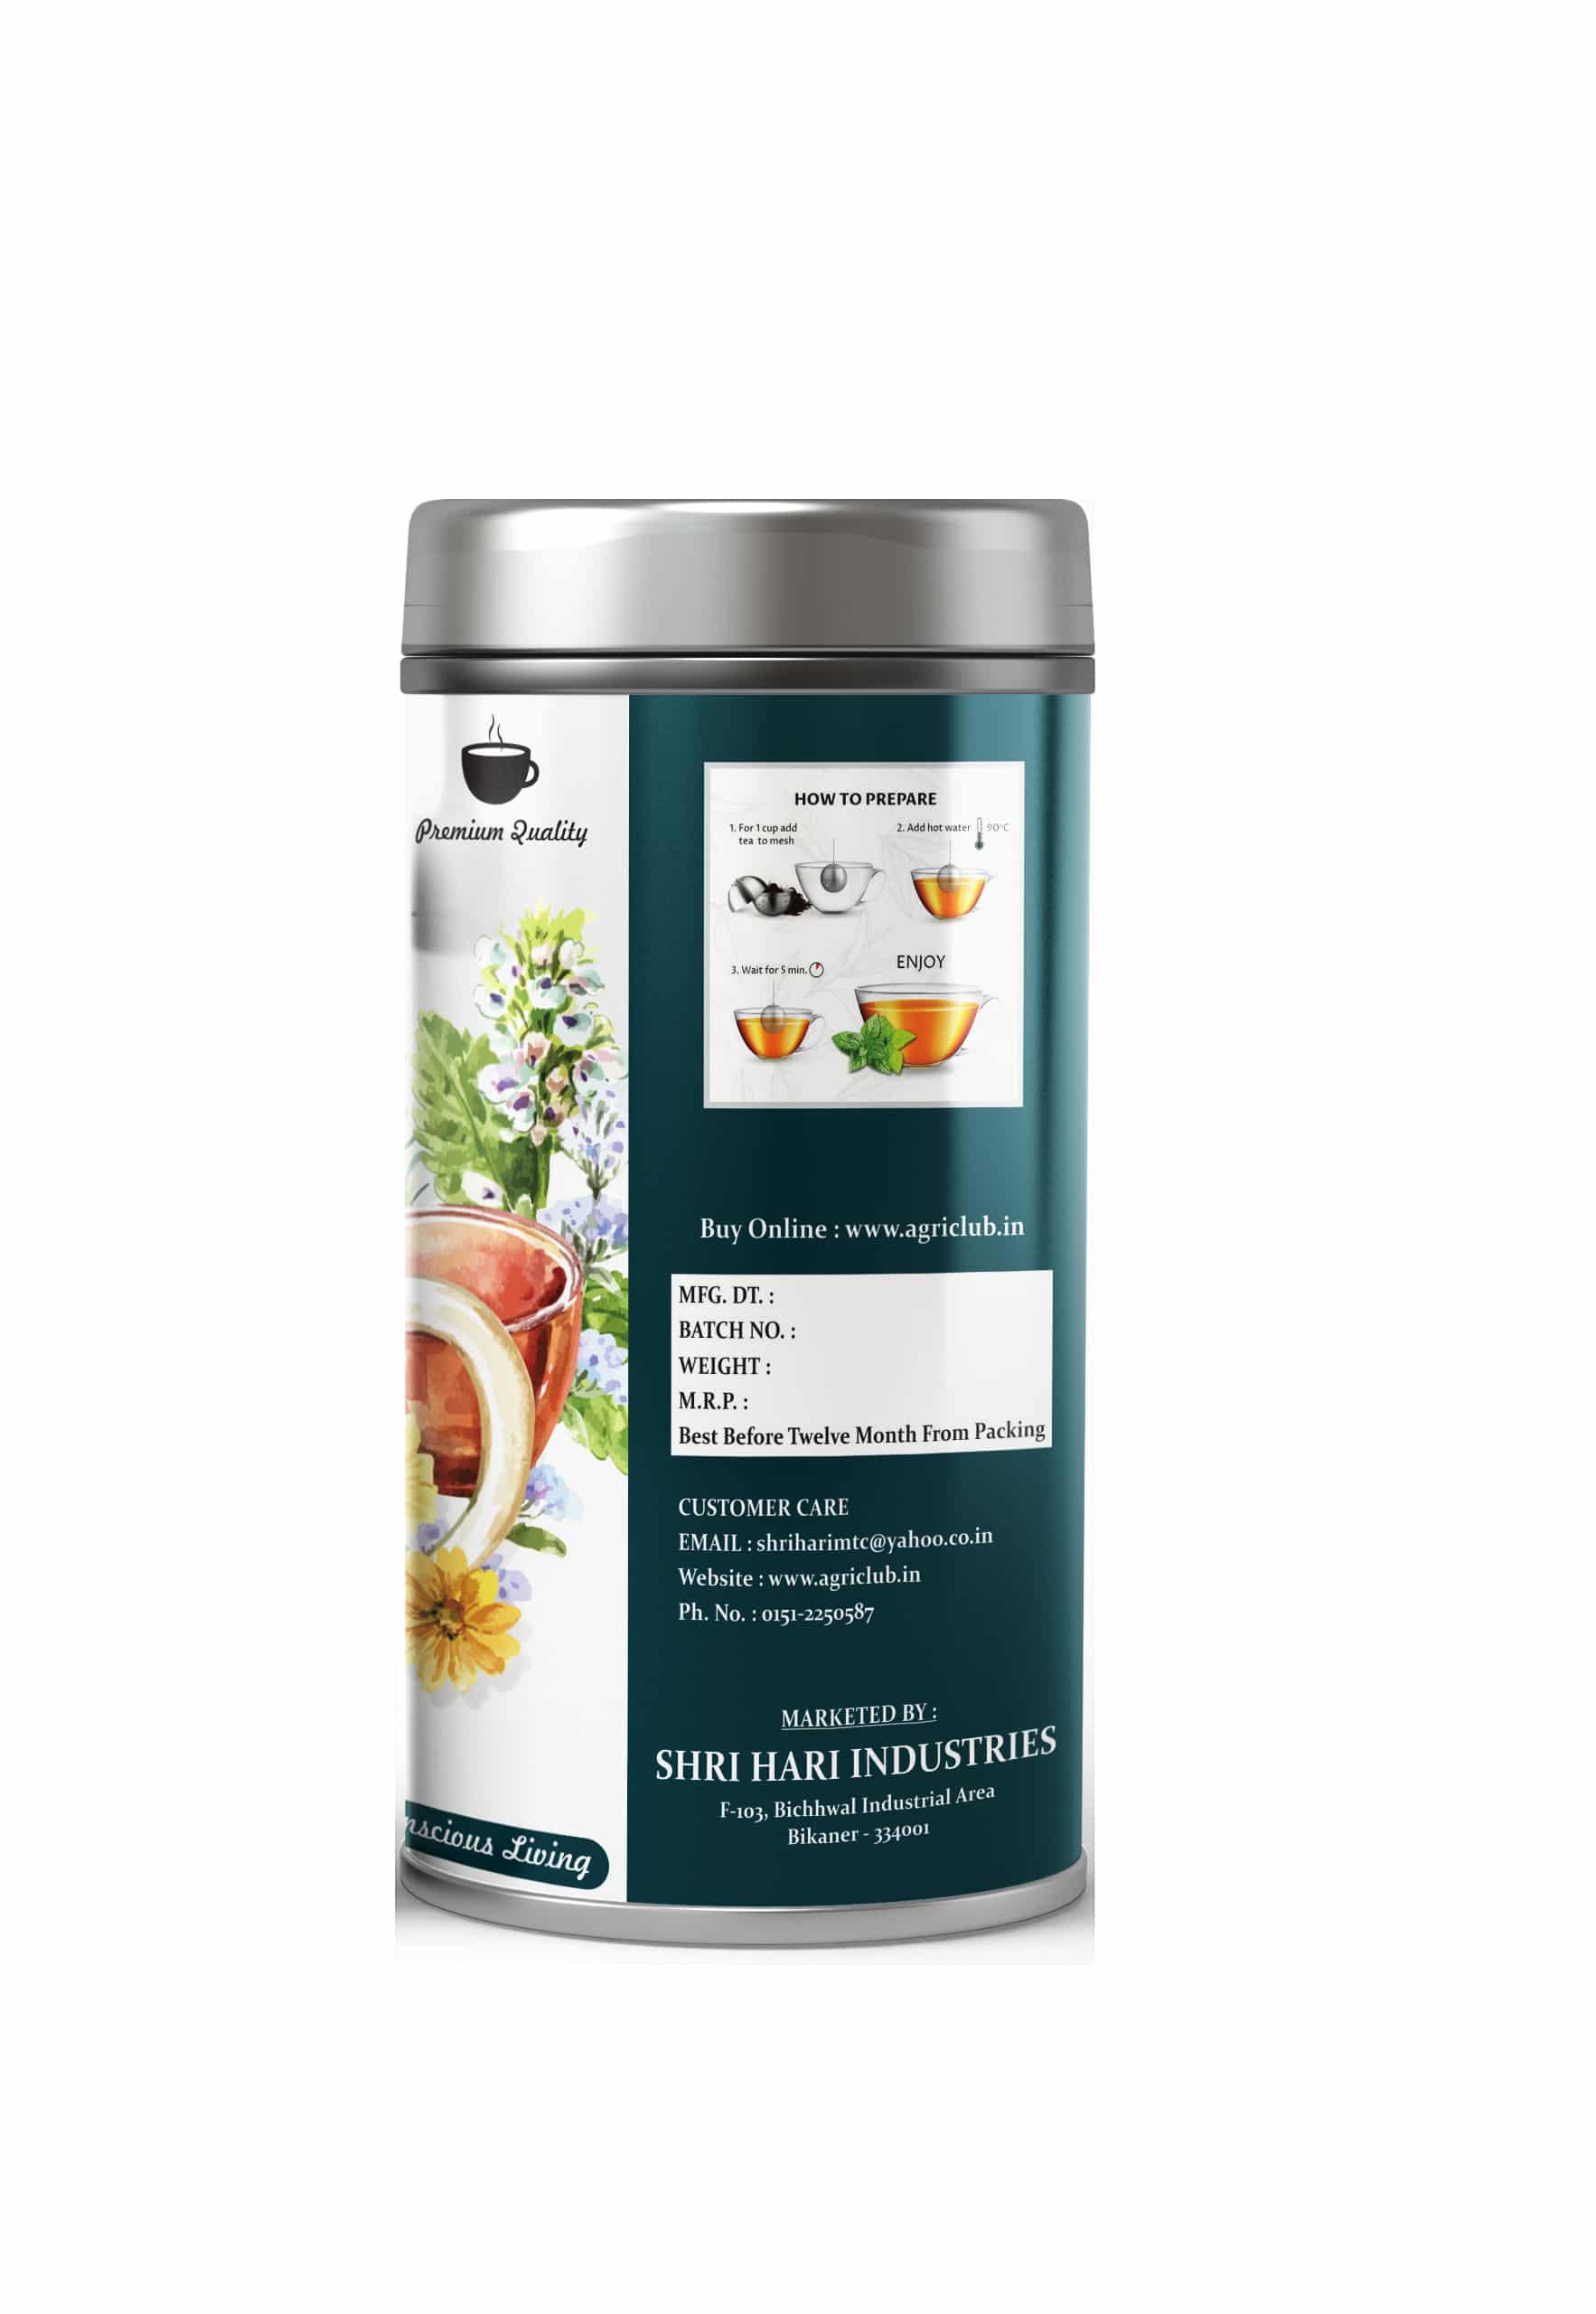 Herbs Tea Moringa + Nettle + Lemongrass 50 GM